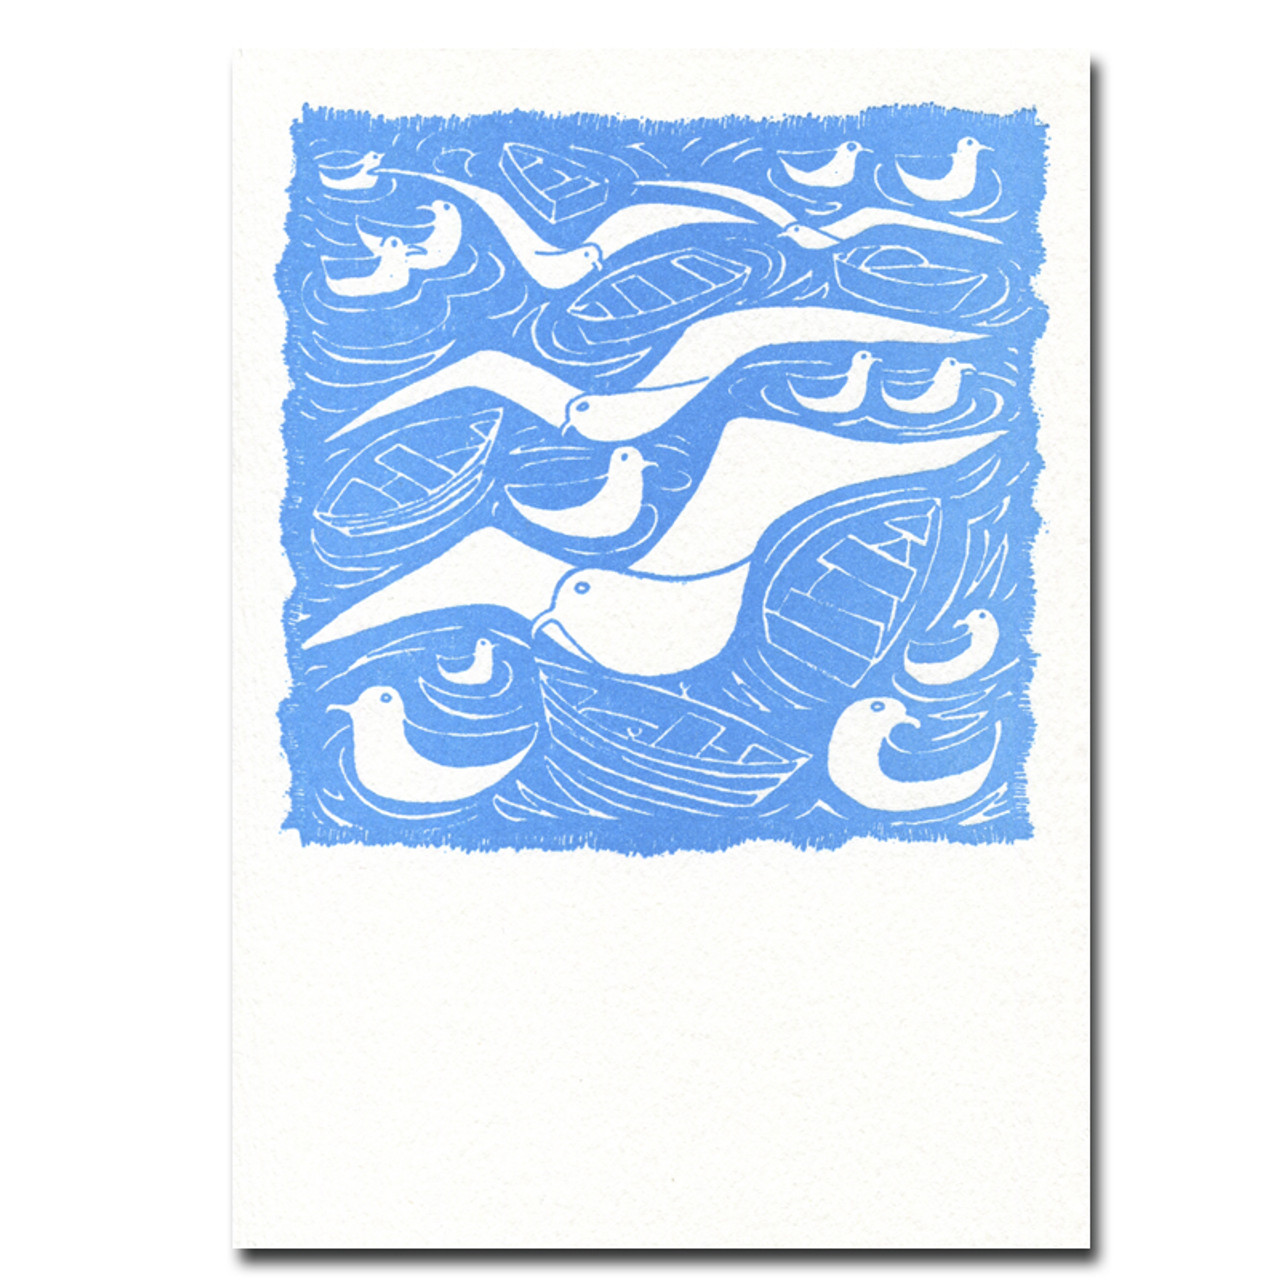 Saturn Press Letterpress Card, Gulls